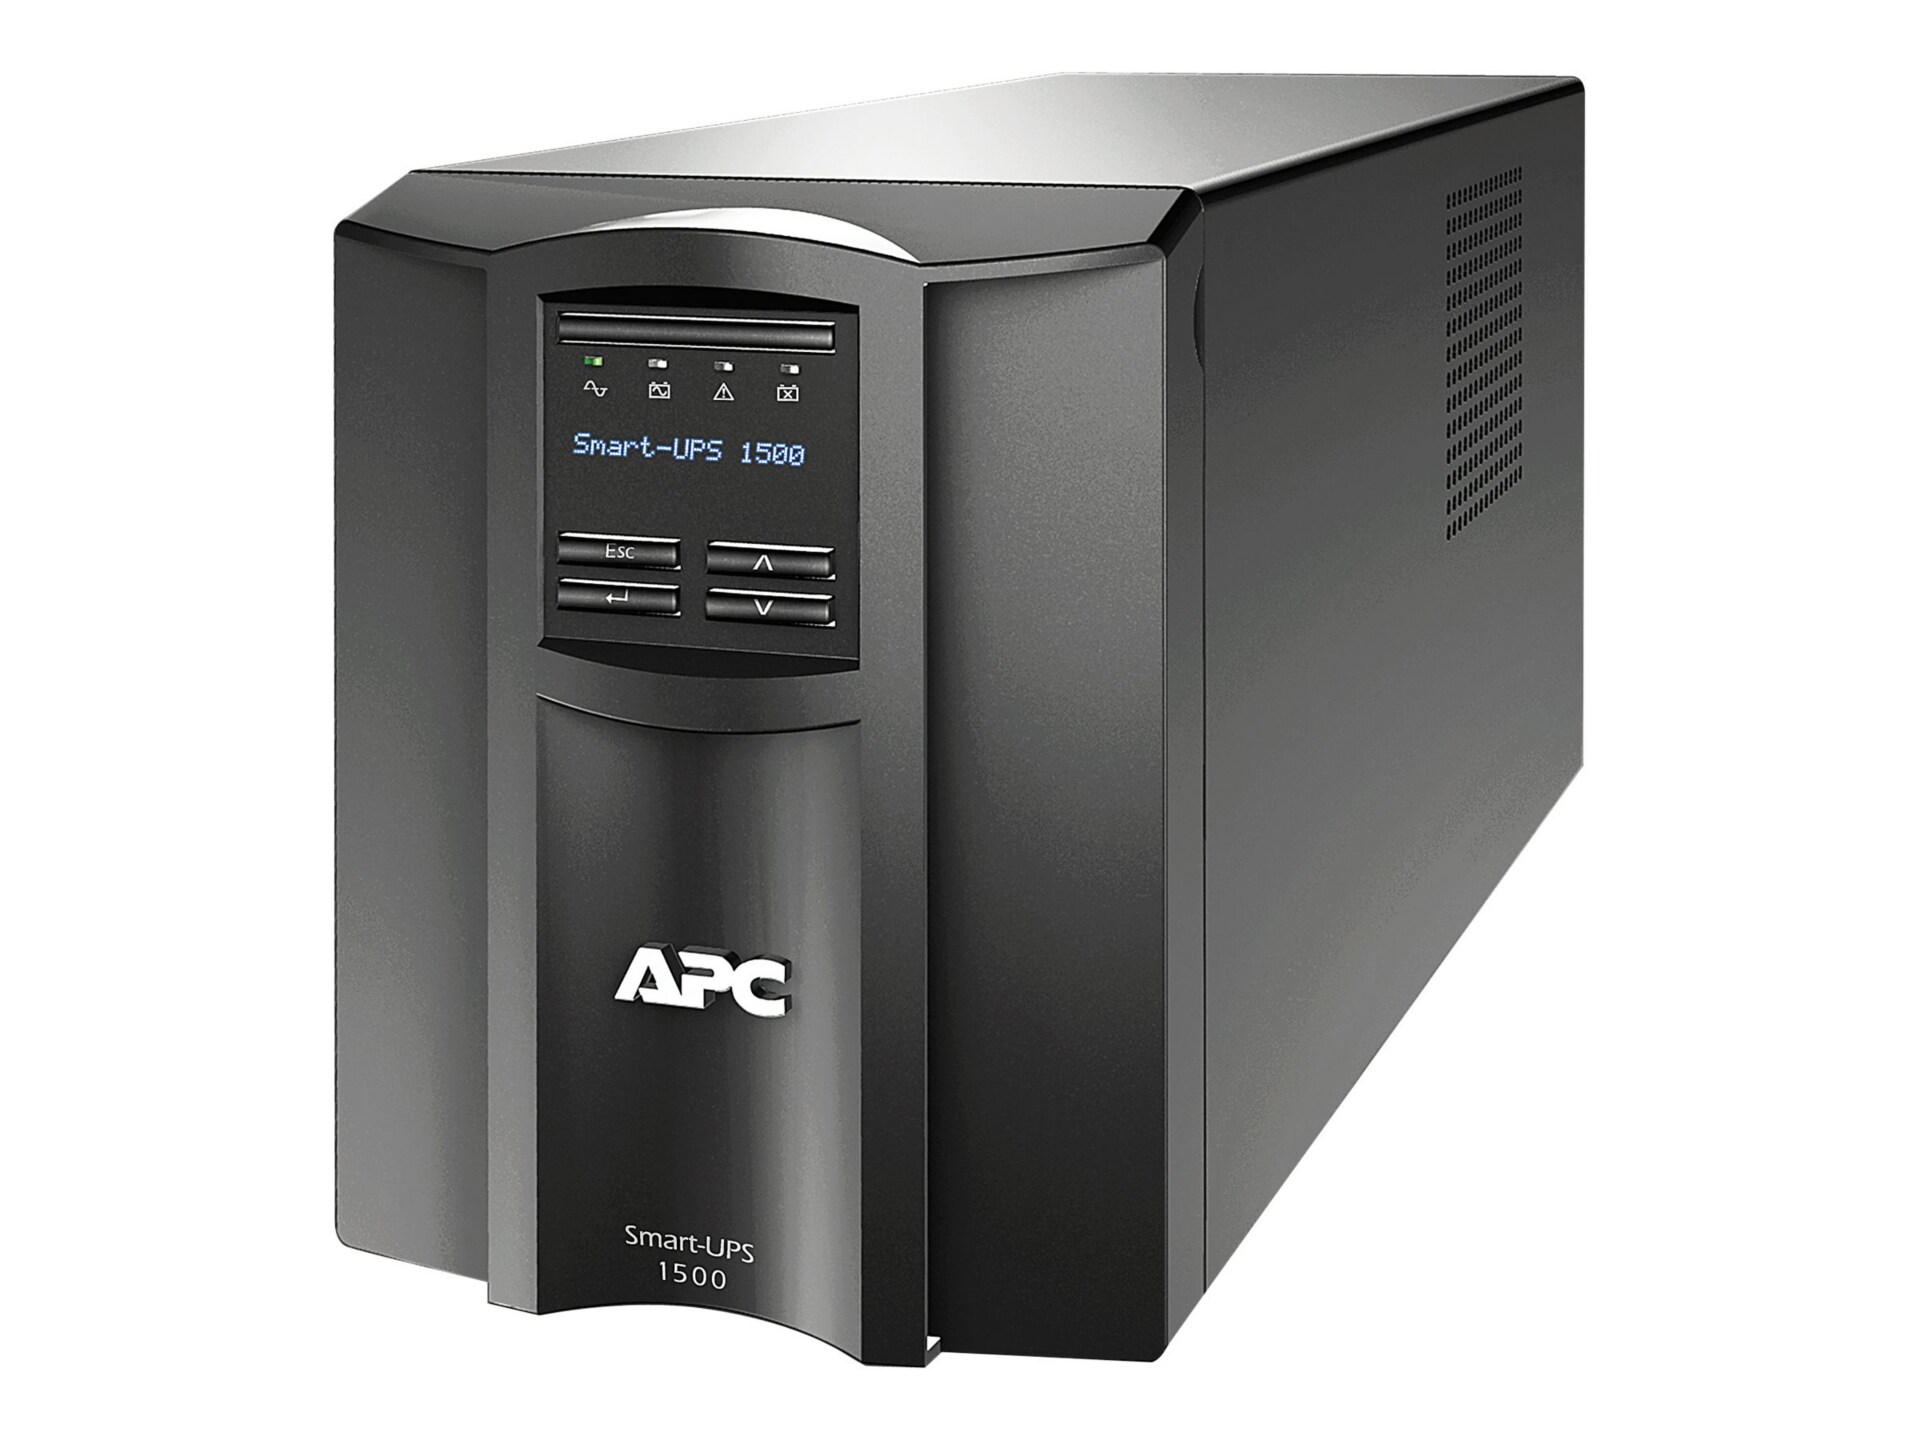 Download Apc 1500 Smart Ups Software For Mac